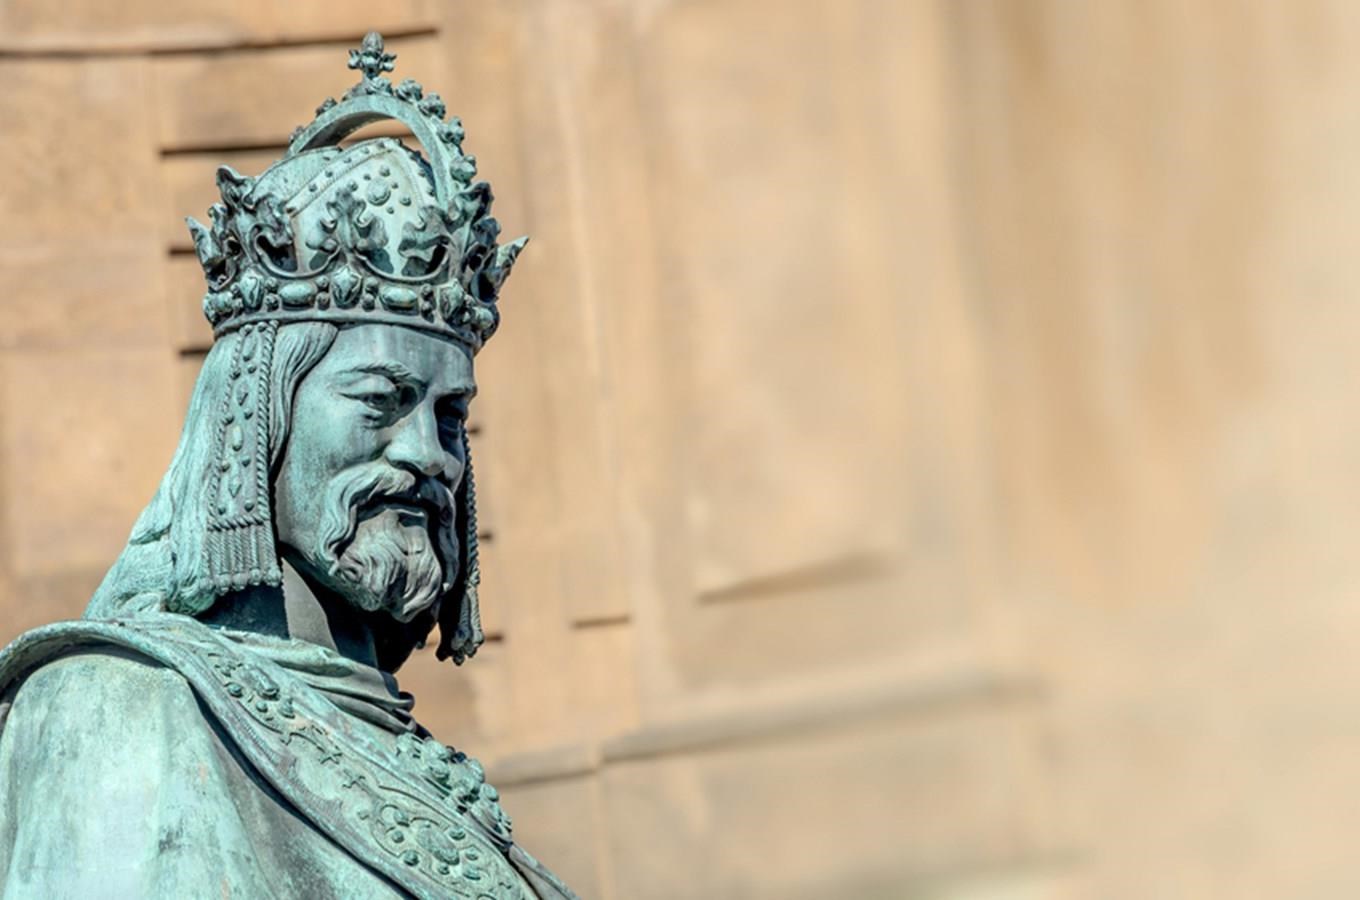 Karel IV., rytíř i zbožný sběratel ostatků, se narodil před 706 lety